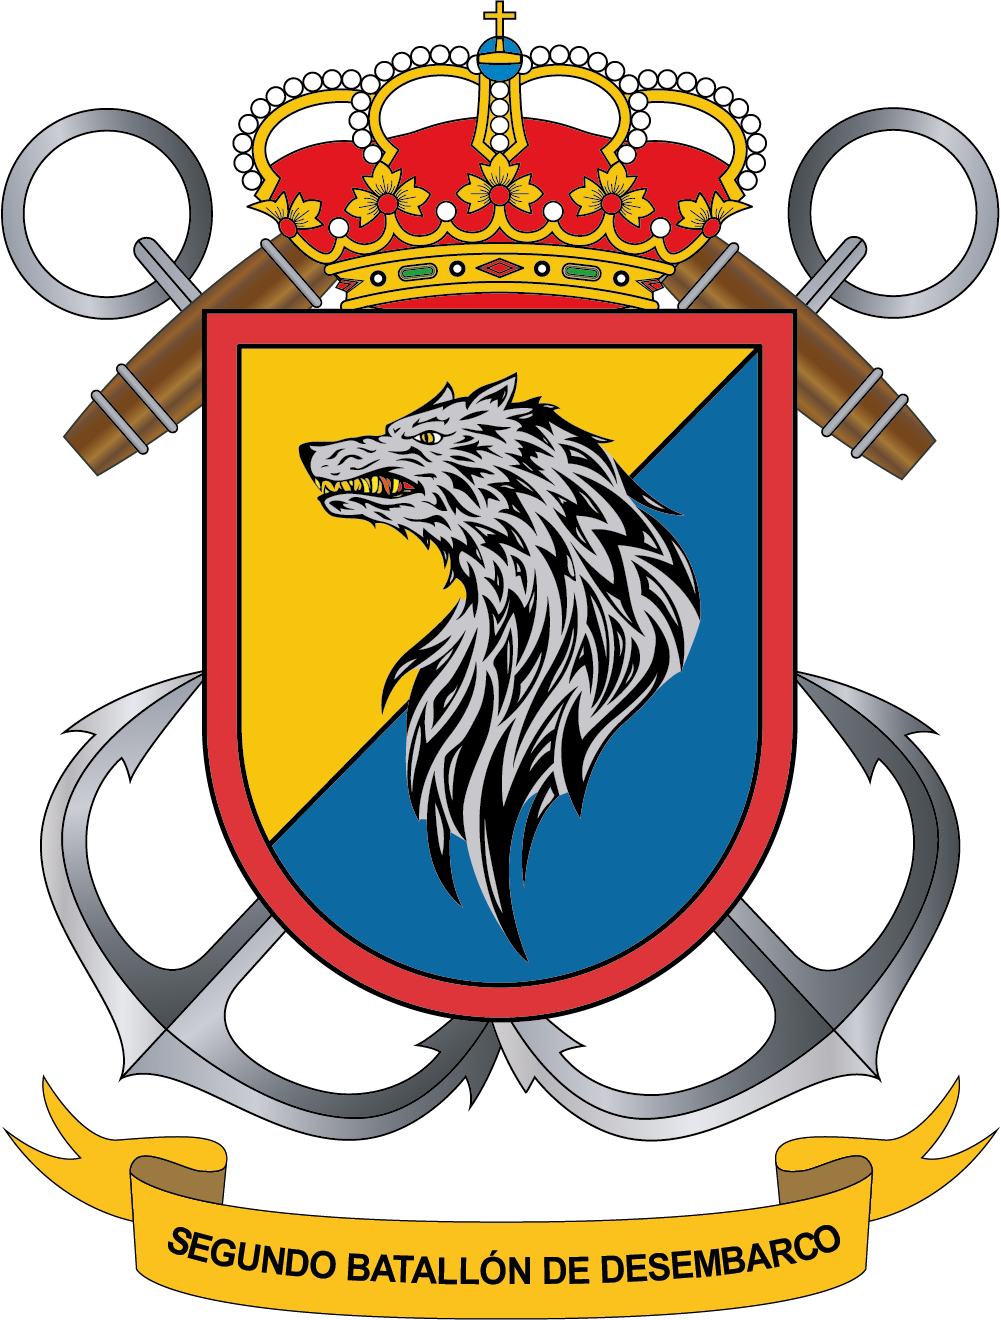 Escudo del Segundo Batallón de Desembarco
